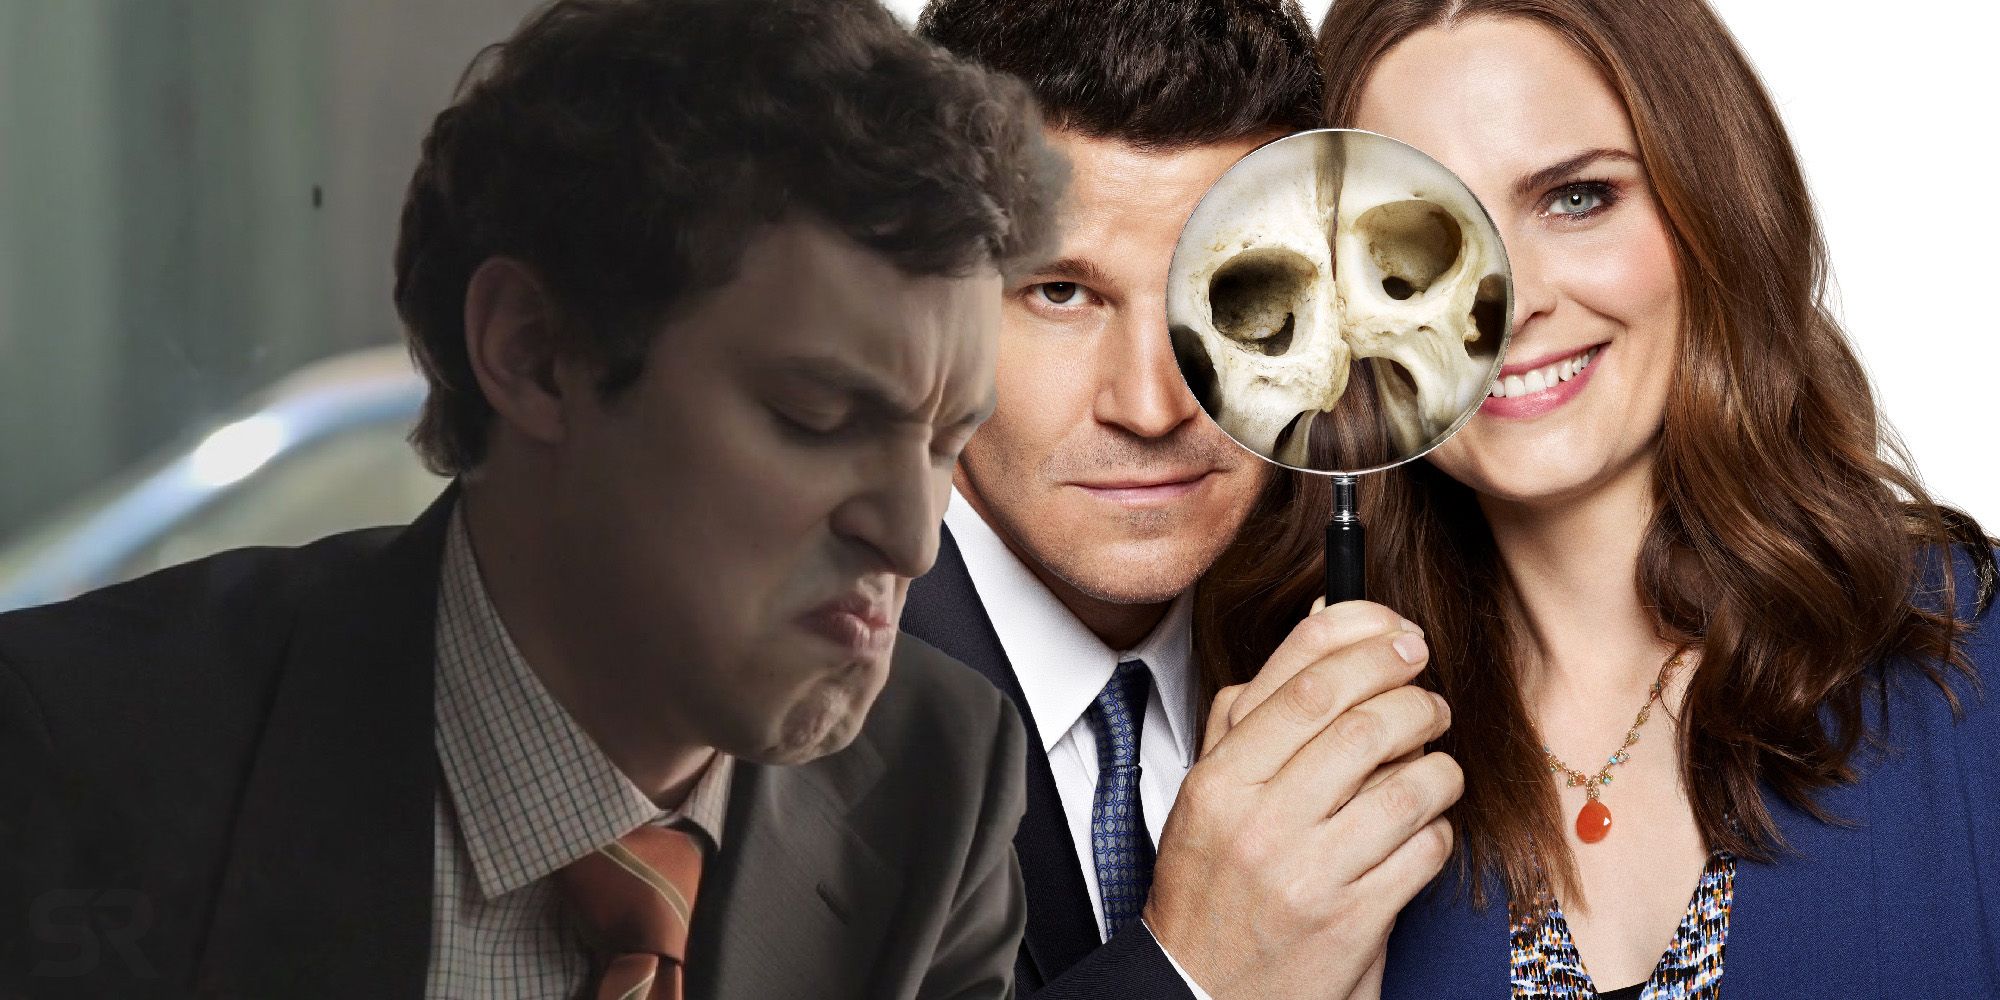 Bones' Season 11 spoilers